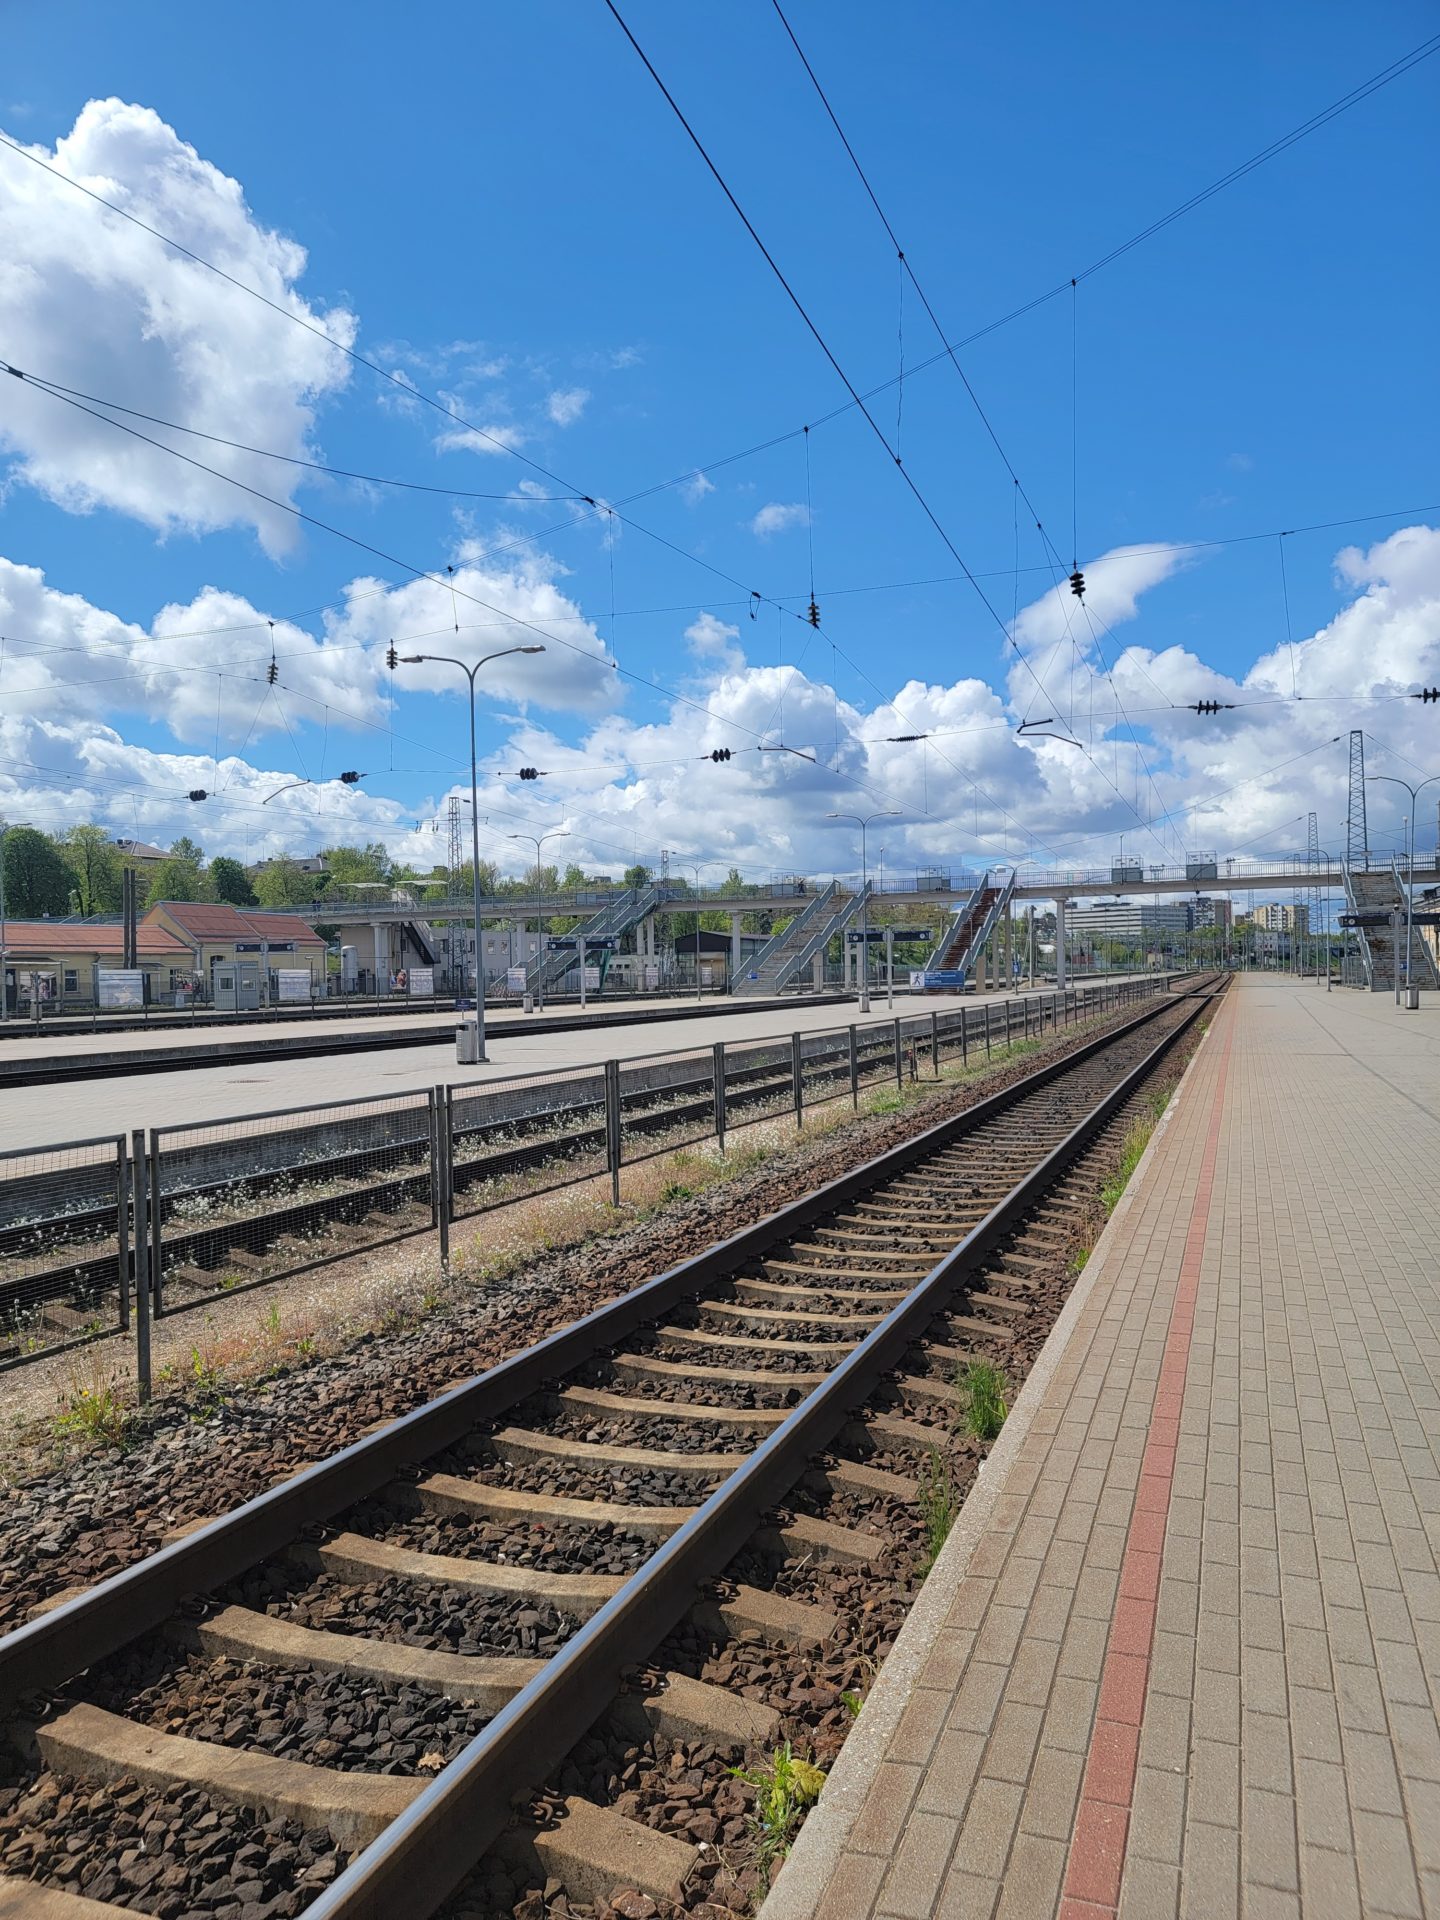 train tracks next to a platform